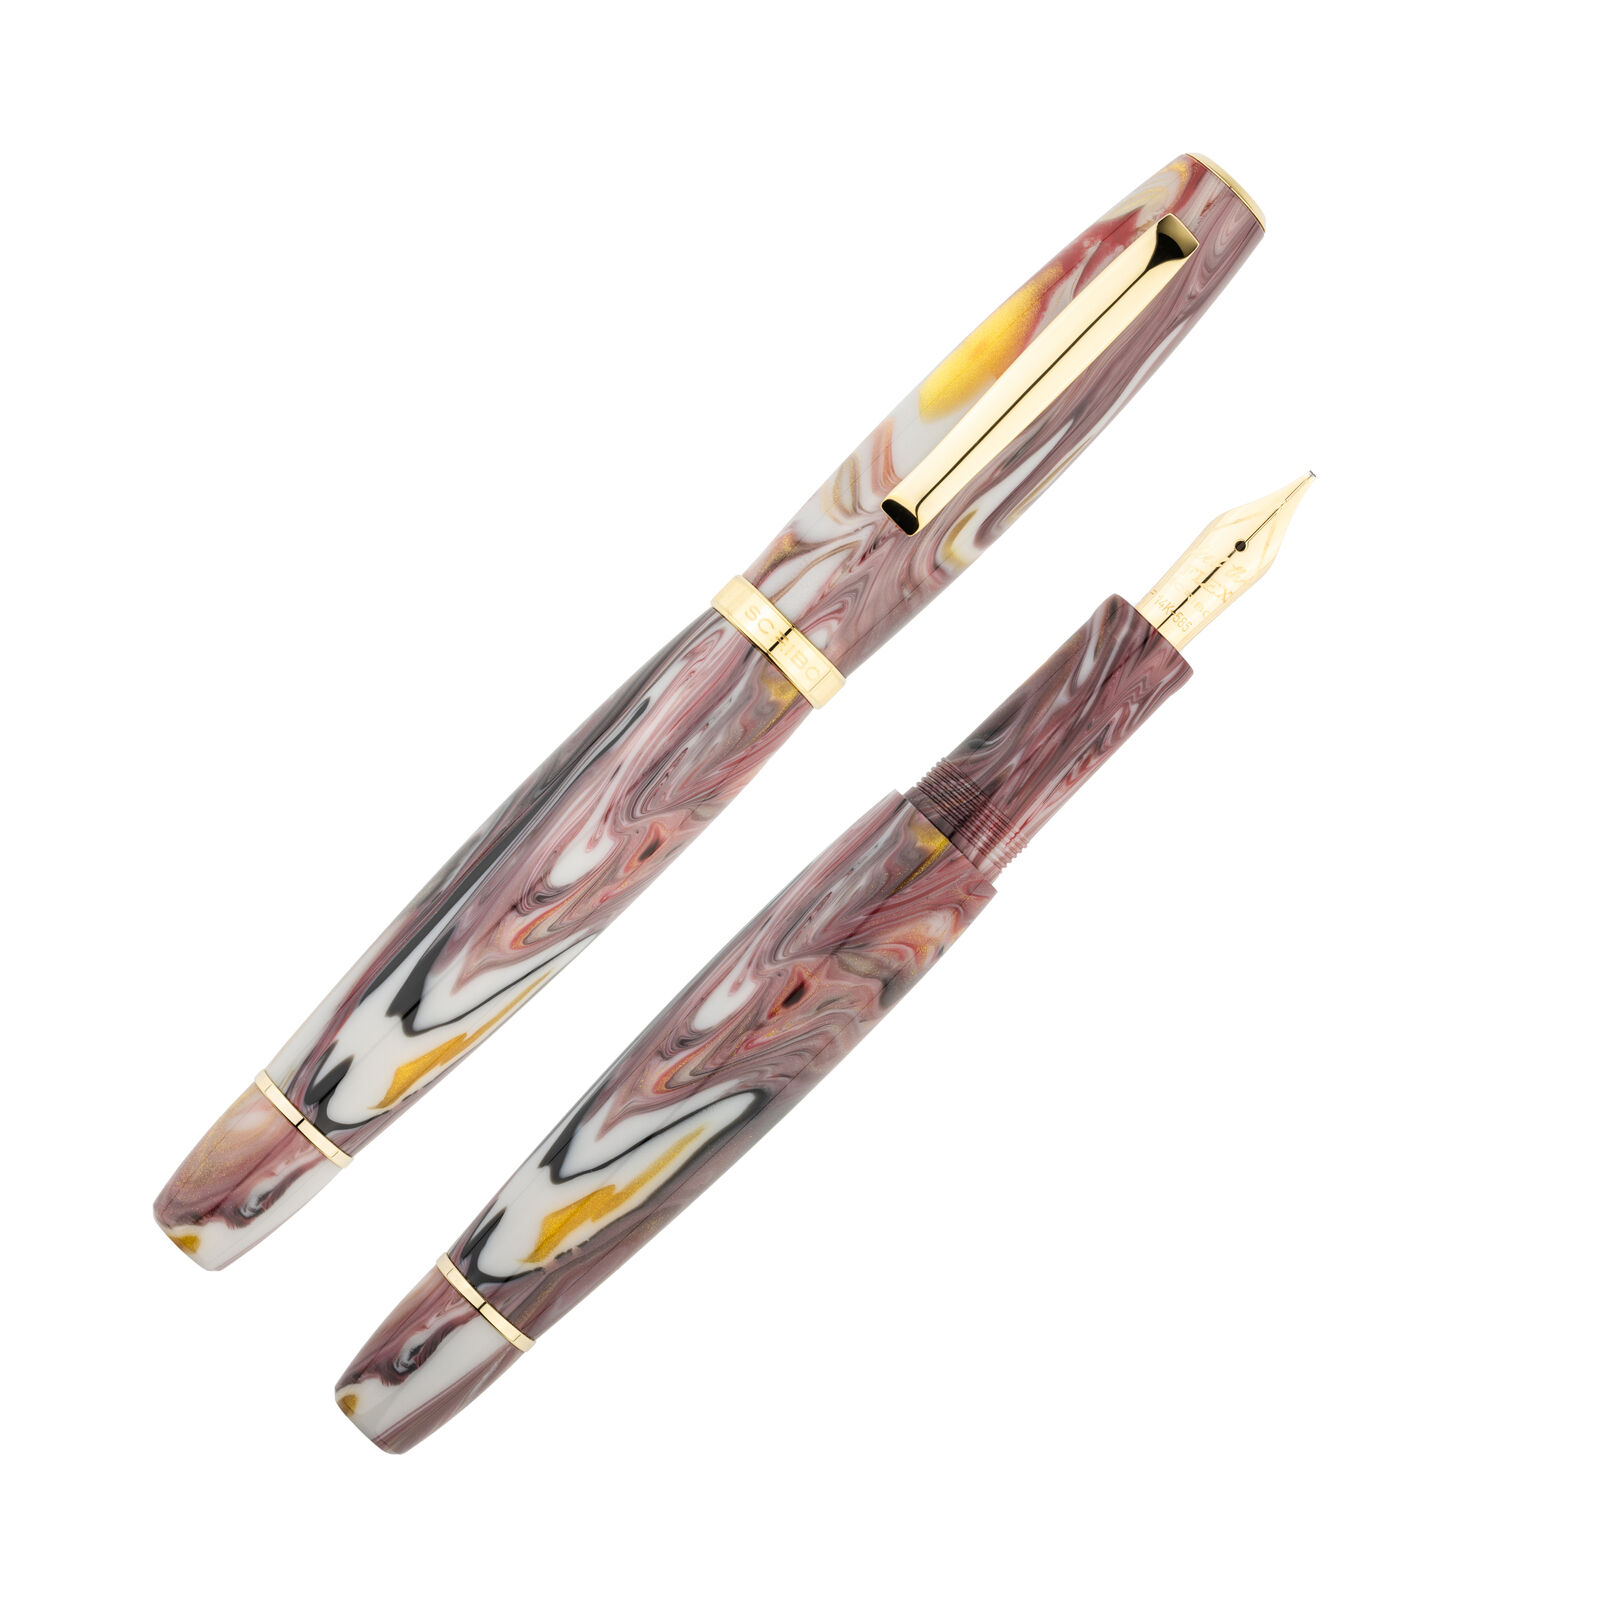 Scribo La Dotta Fountain Pen in Orefici - Extra Extra Fine 18kt Gold Nib - NEW